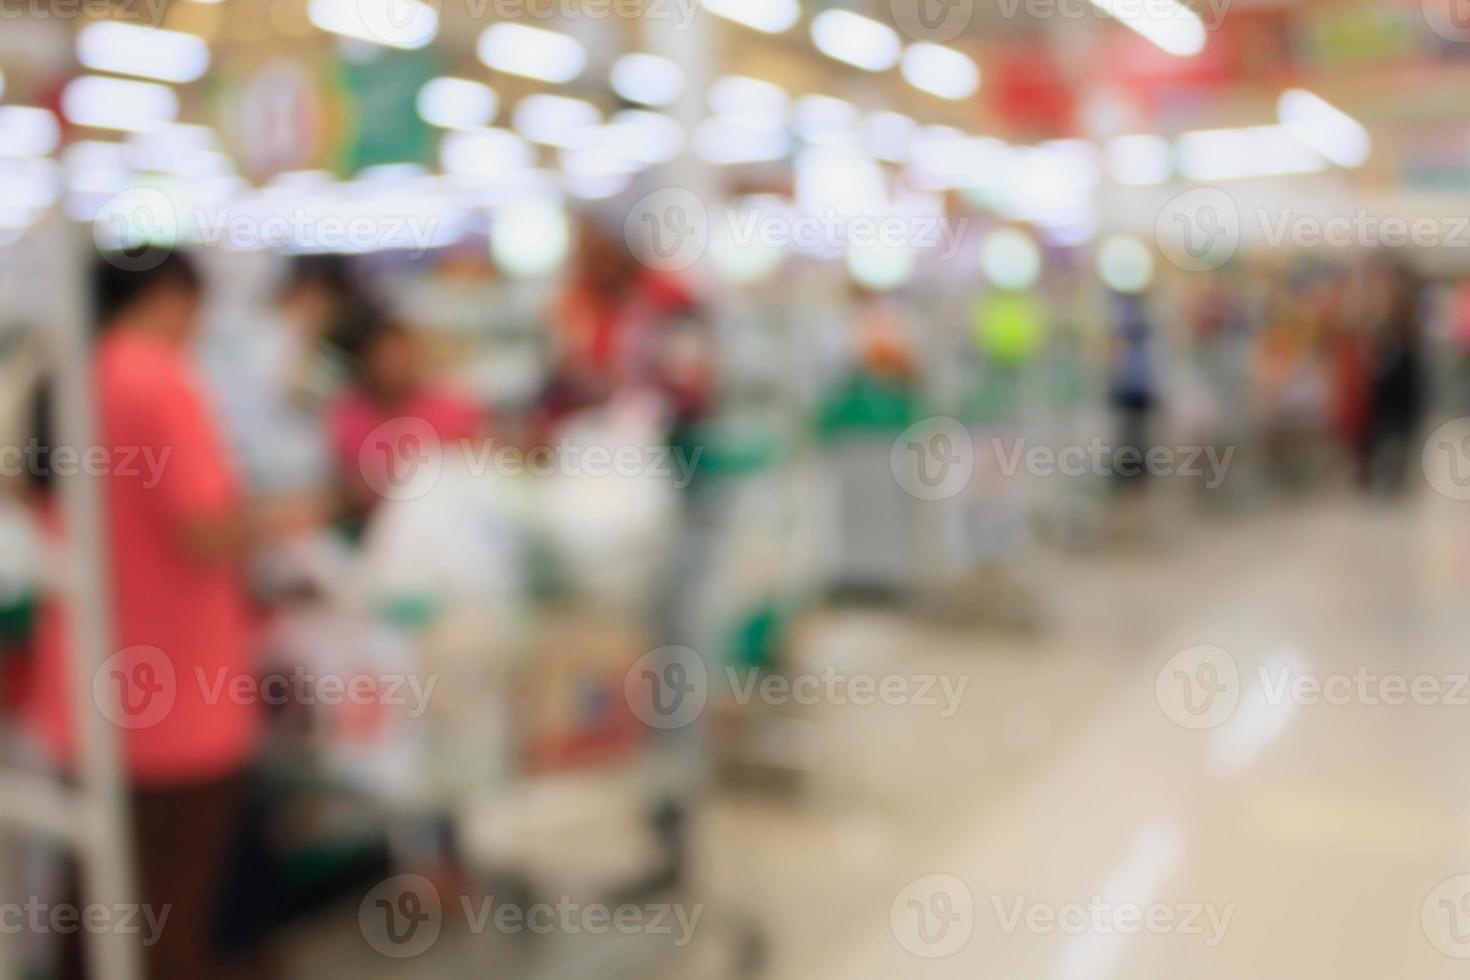 supermarkt kassa betaalterminal met klanten onscherpe achtergrond foto